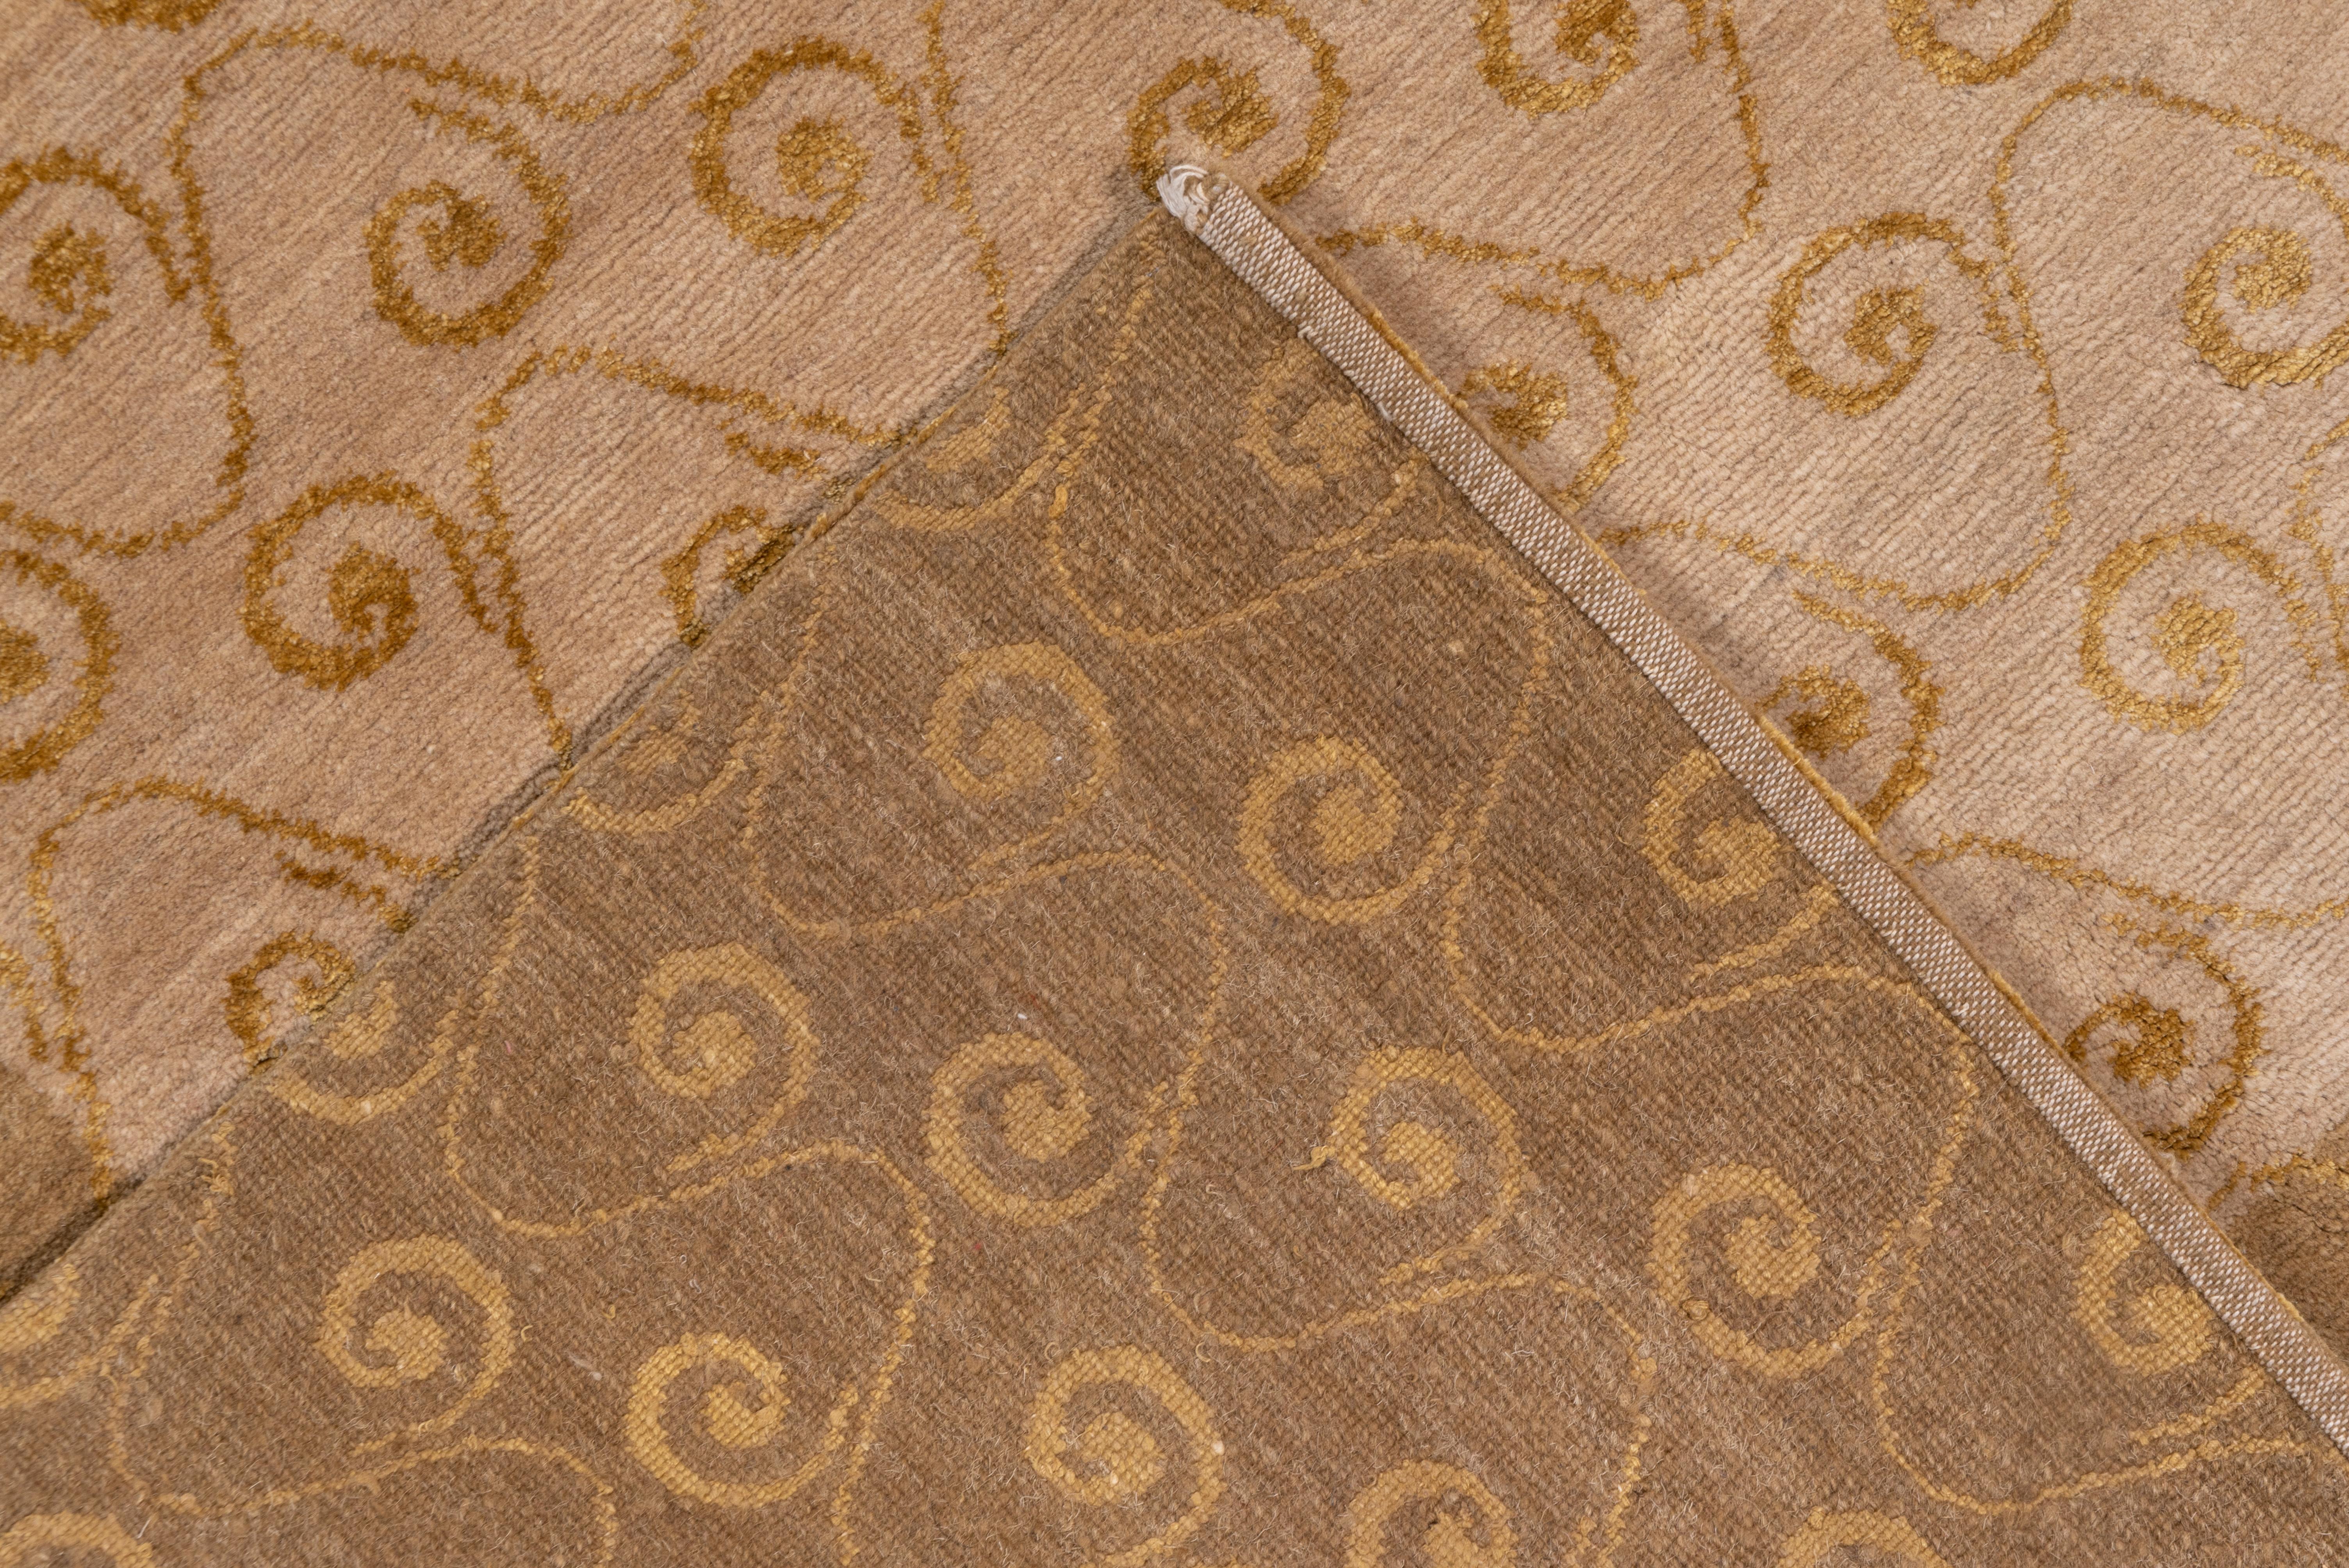 Modern Tibetan Carpet with Gold Border, Gold Snail Shell Spiral Allover Field 1